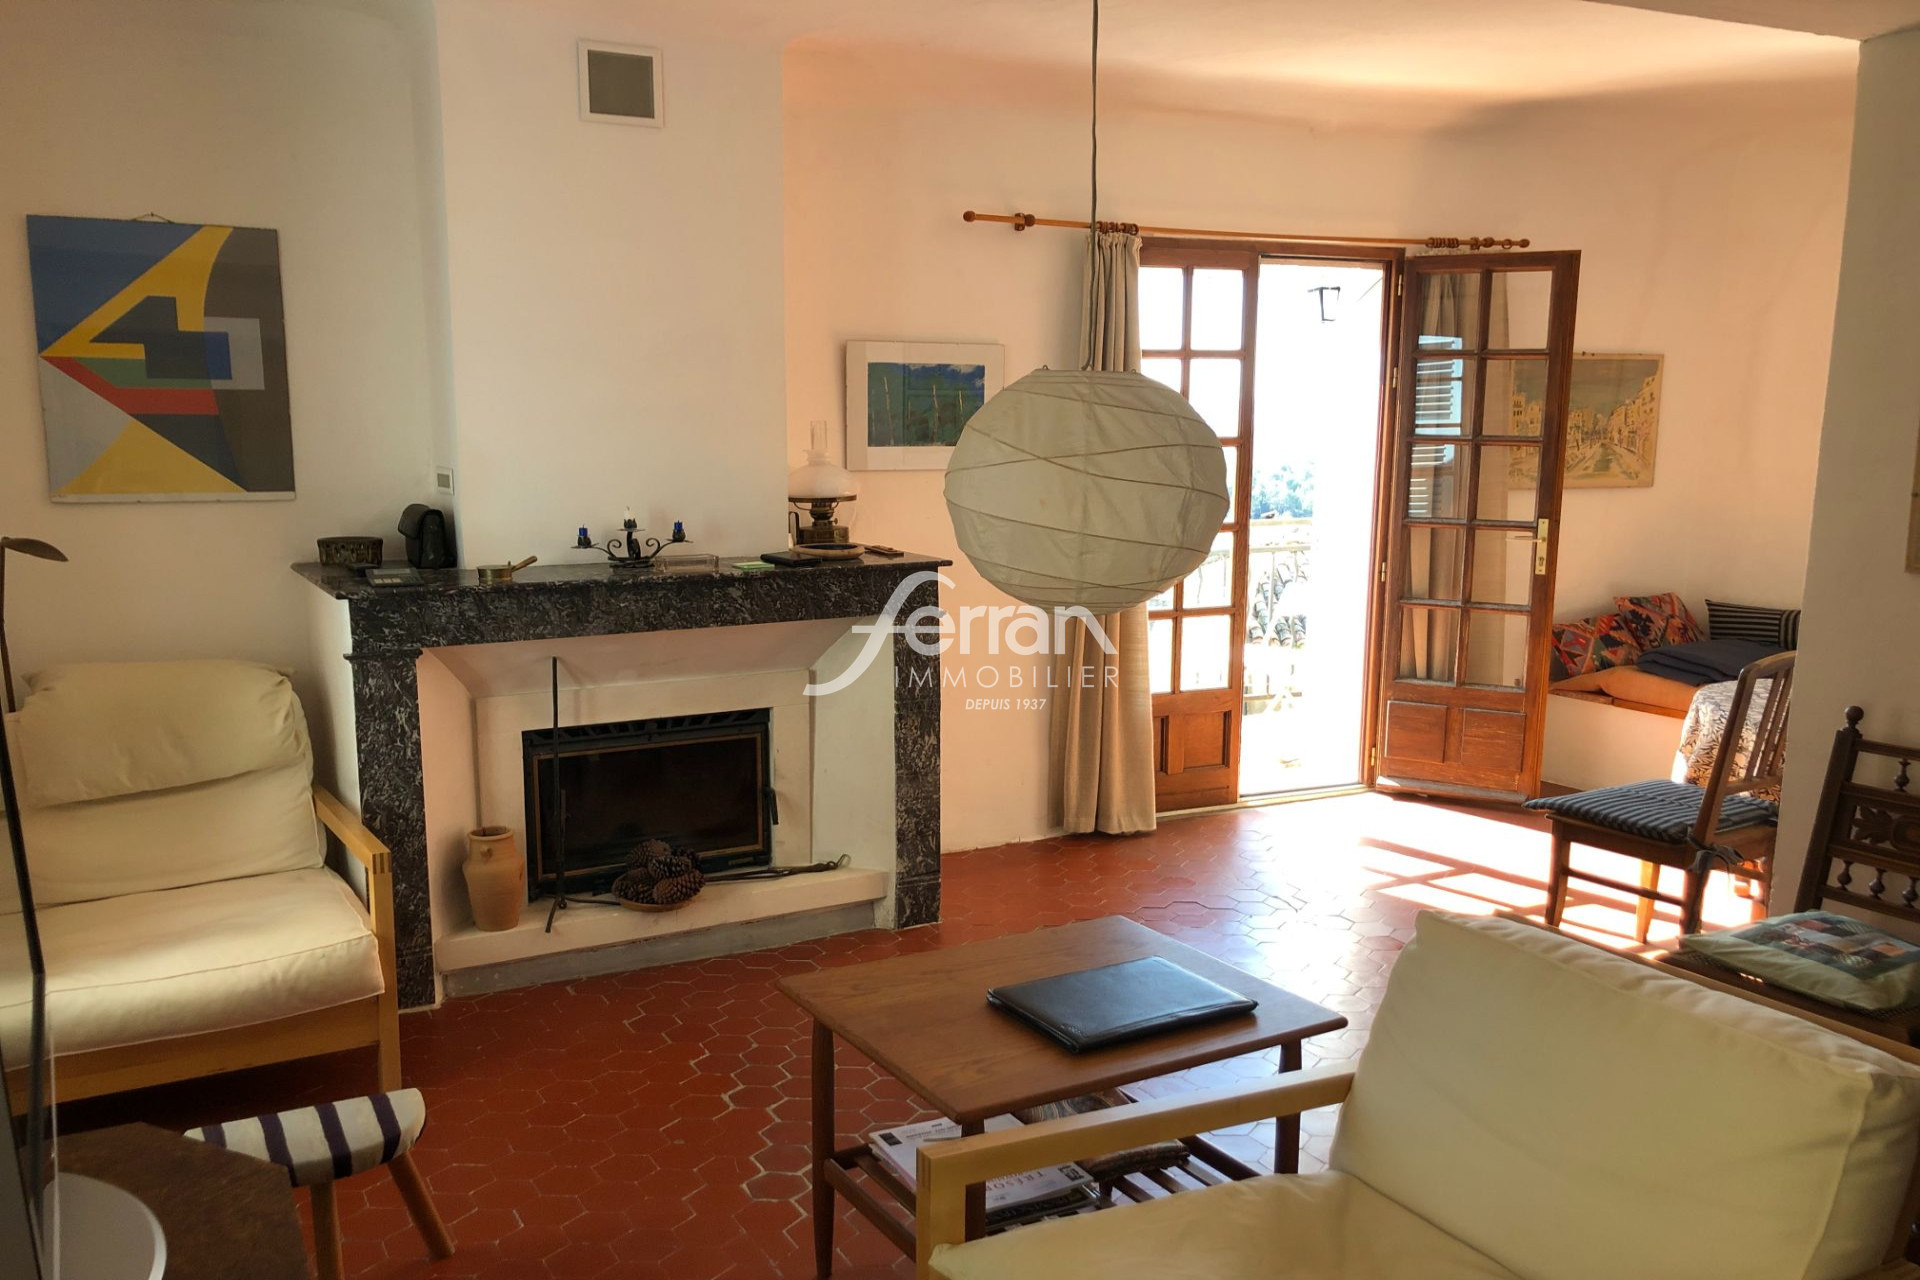 Vente Appartement 70m² à Callas (83830) - Ferran Immobilier